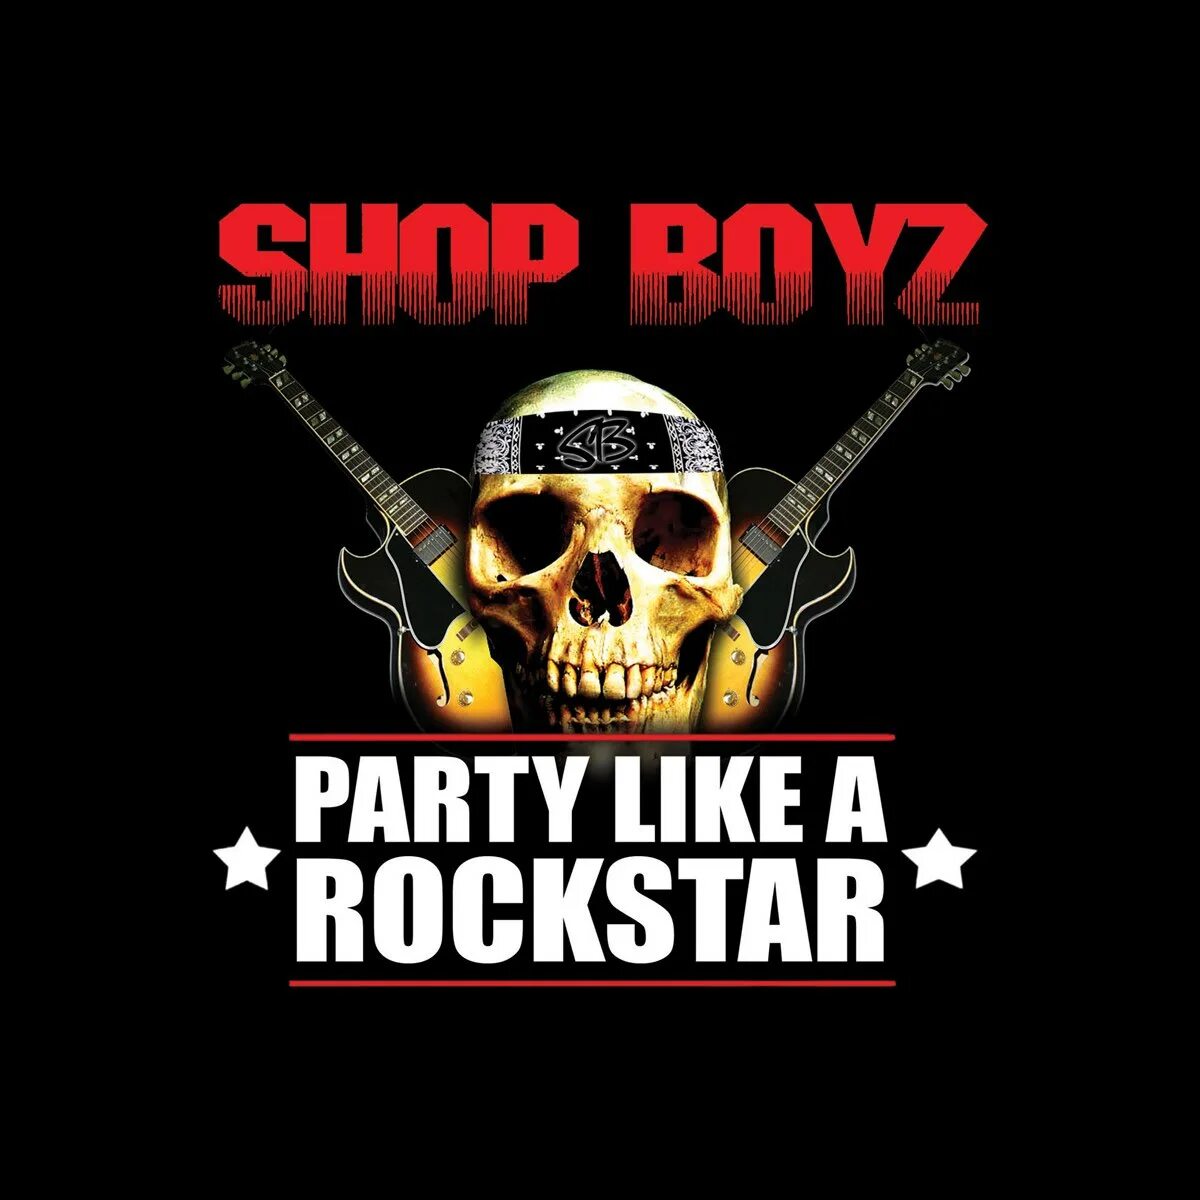 Party like a rockstar tik tok. Shop Boyz Party like a Rockstar. Party like a Rockstar. Shop boys - Rockstar Mentality. Вайт панк рокстар обложка.